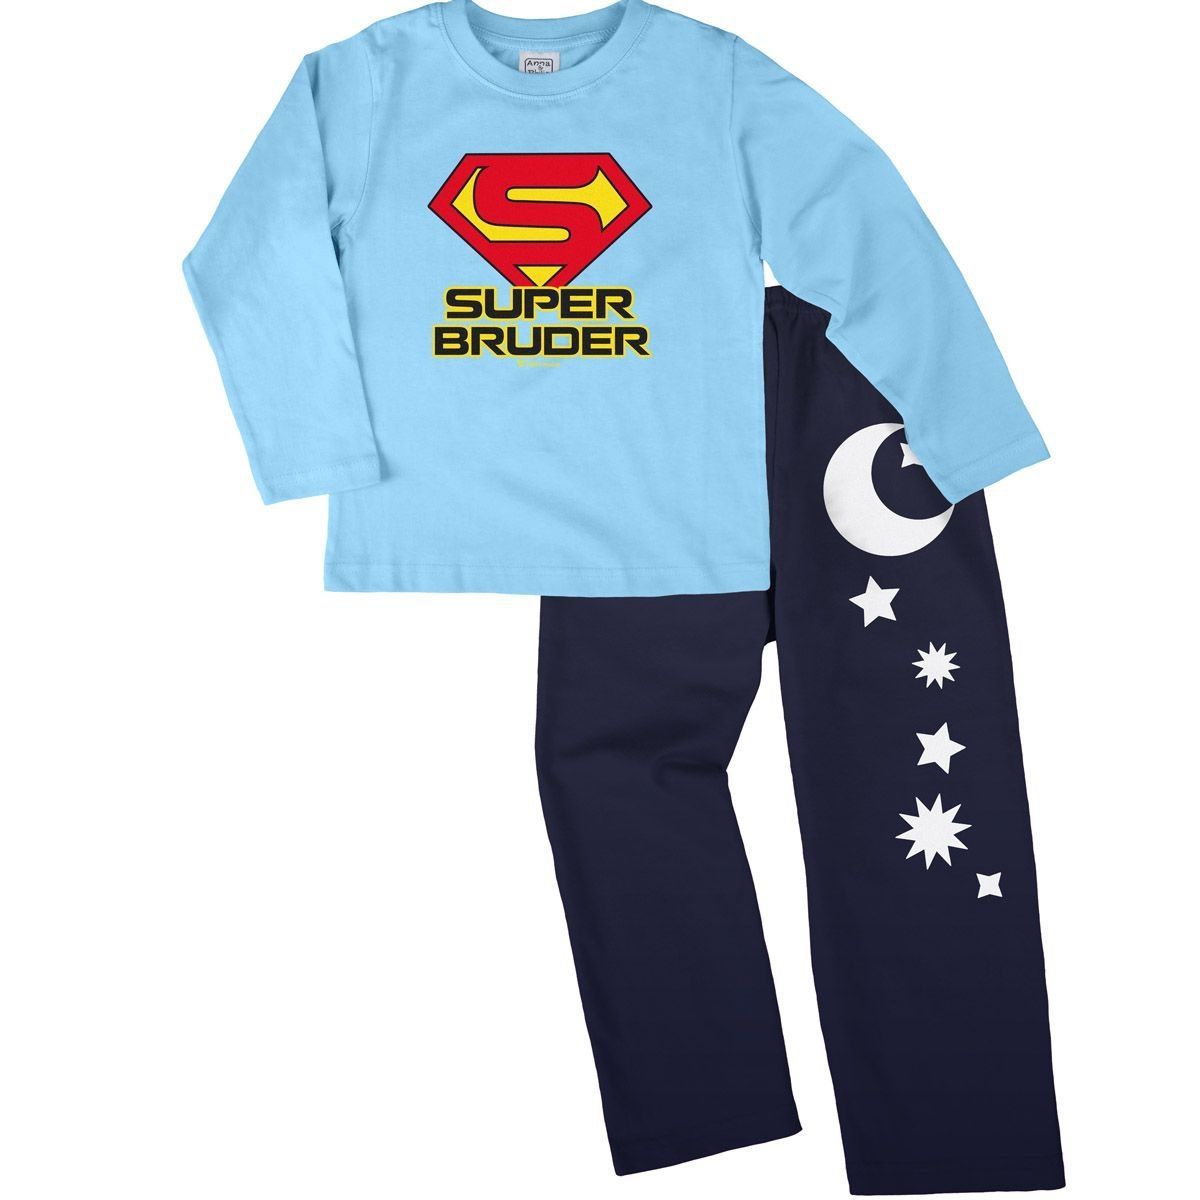 Super Bruder Pyjama Set hellblau / navy 134 / 140